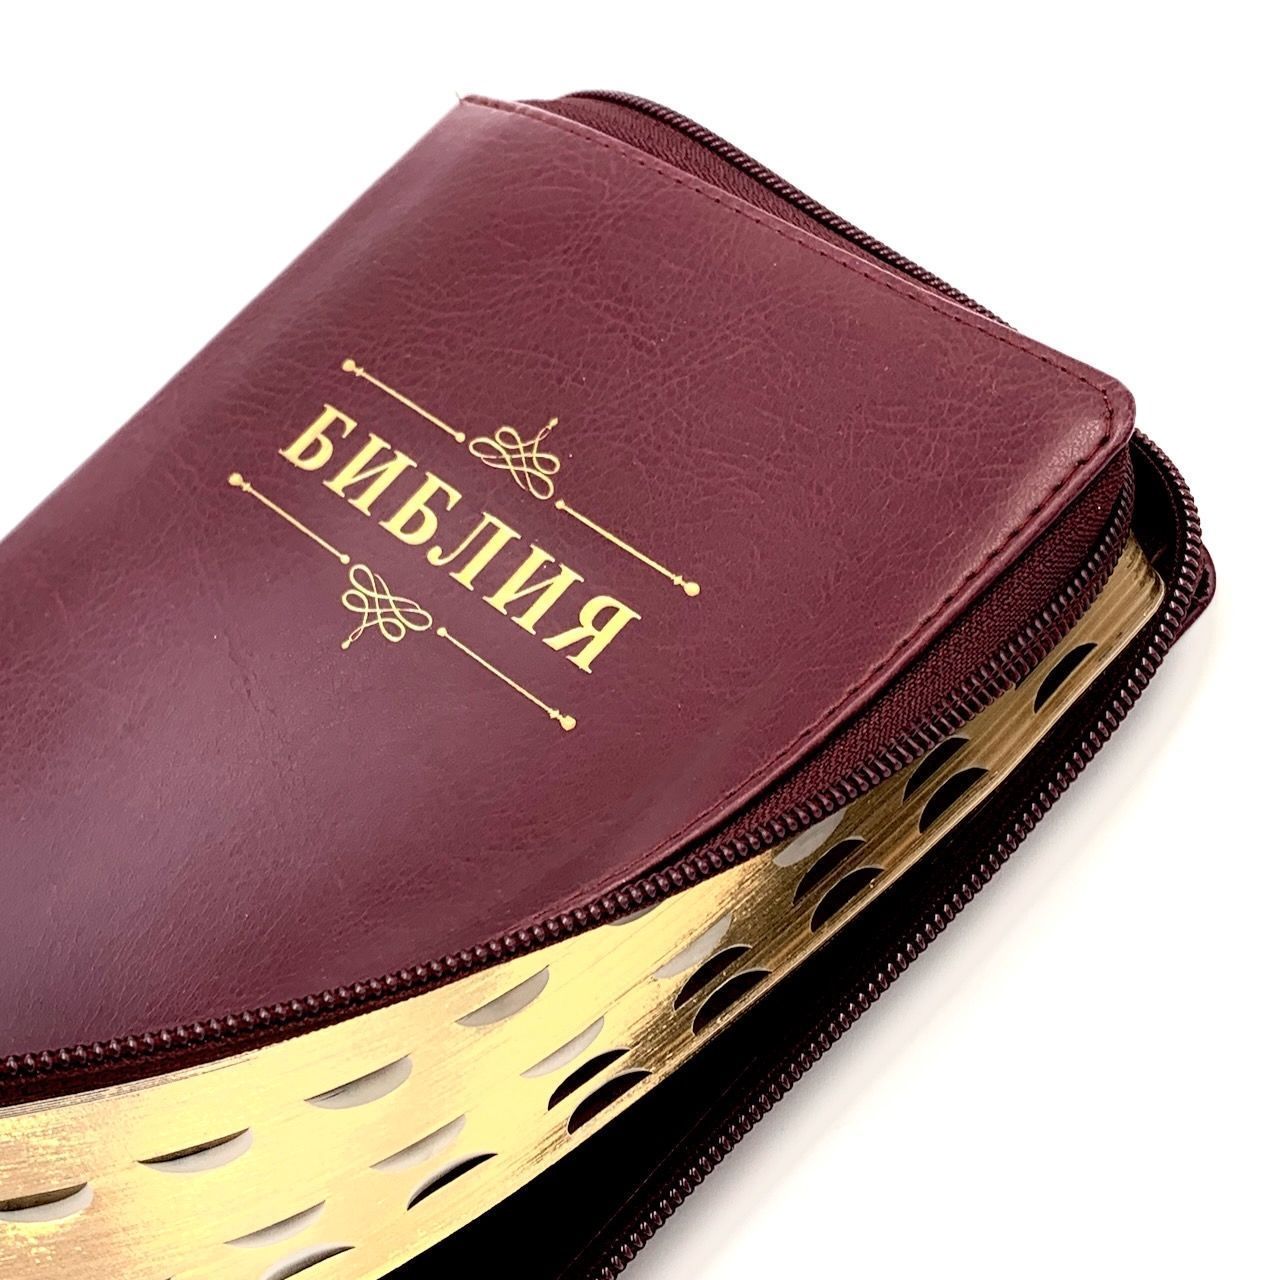 Библия 055zti код 23055-14 надпись "Библия", переплет из искусственной кожи на молнии с индексами, цвет темно-бордовый, средний формат, 143*220 мм